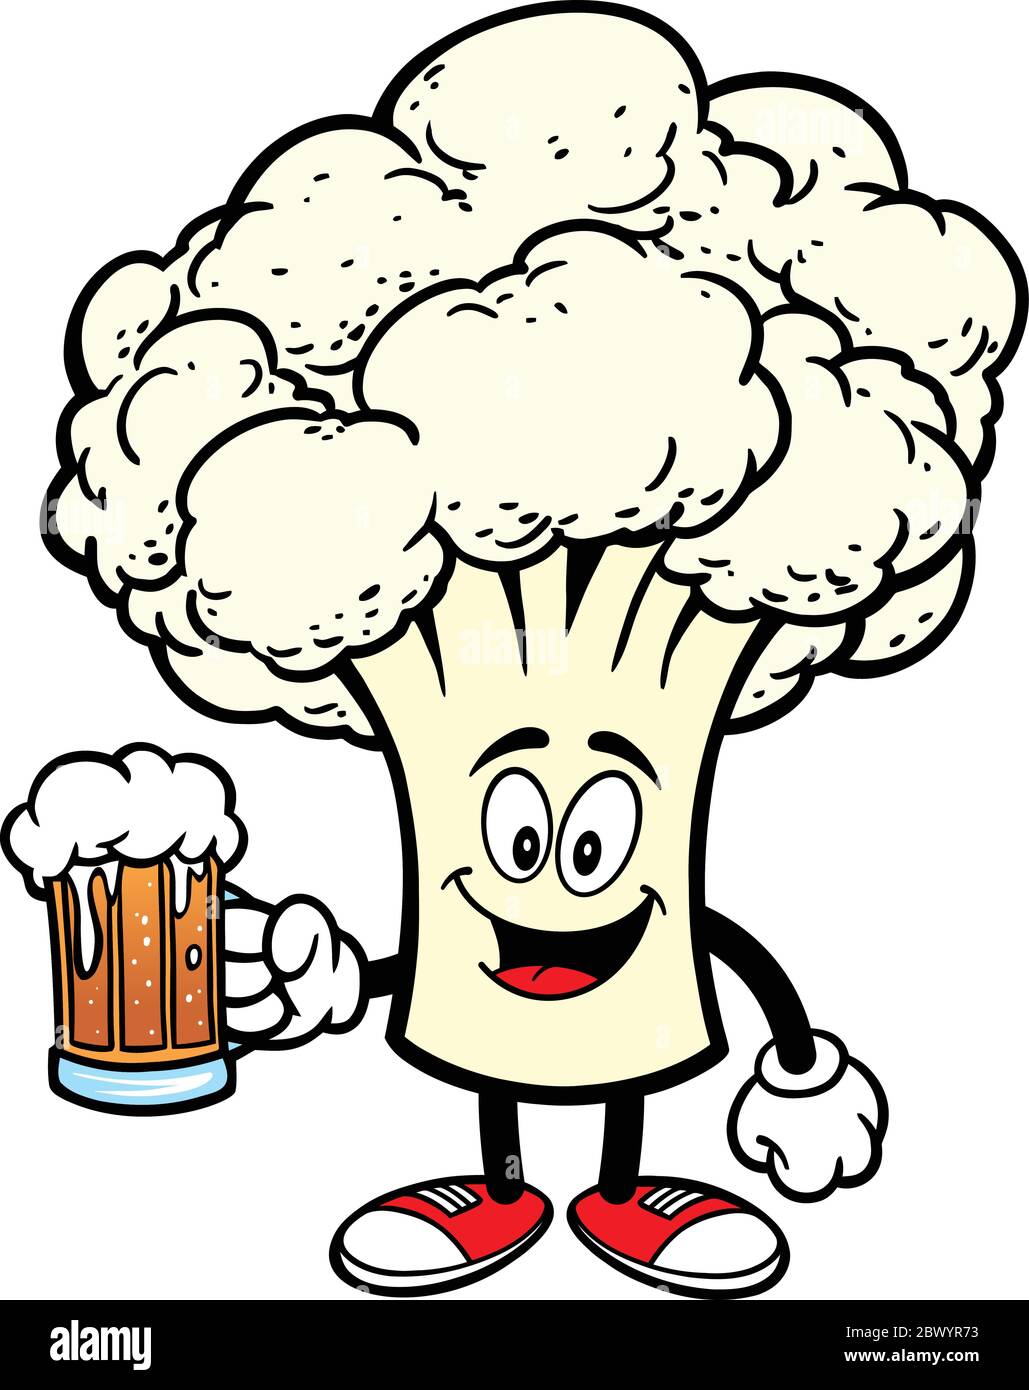 Blumenkohl-Maskottchen mit Bier - EINE Karikatur-Illustration eines Blumenkohl-Maskottchen mit einem Bier. Stock Vektor